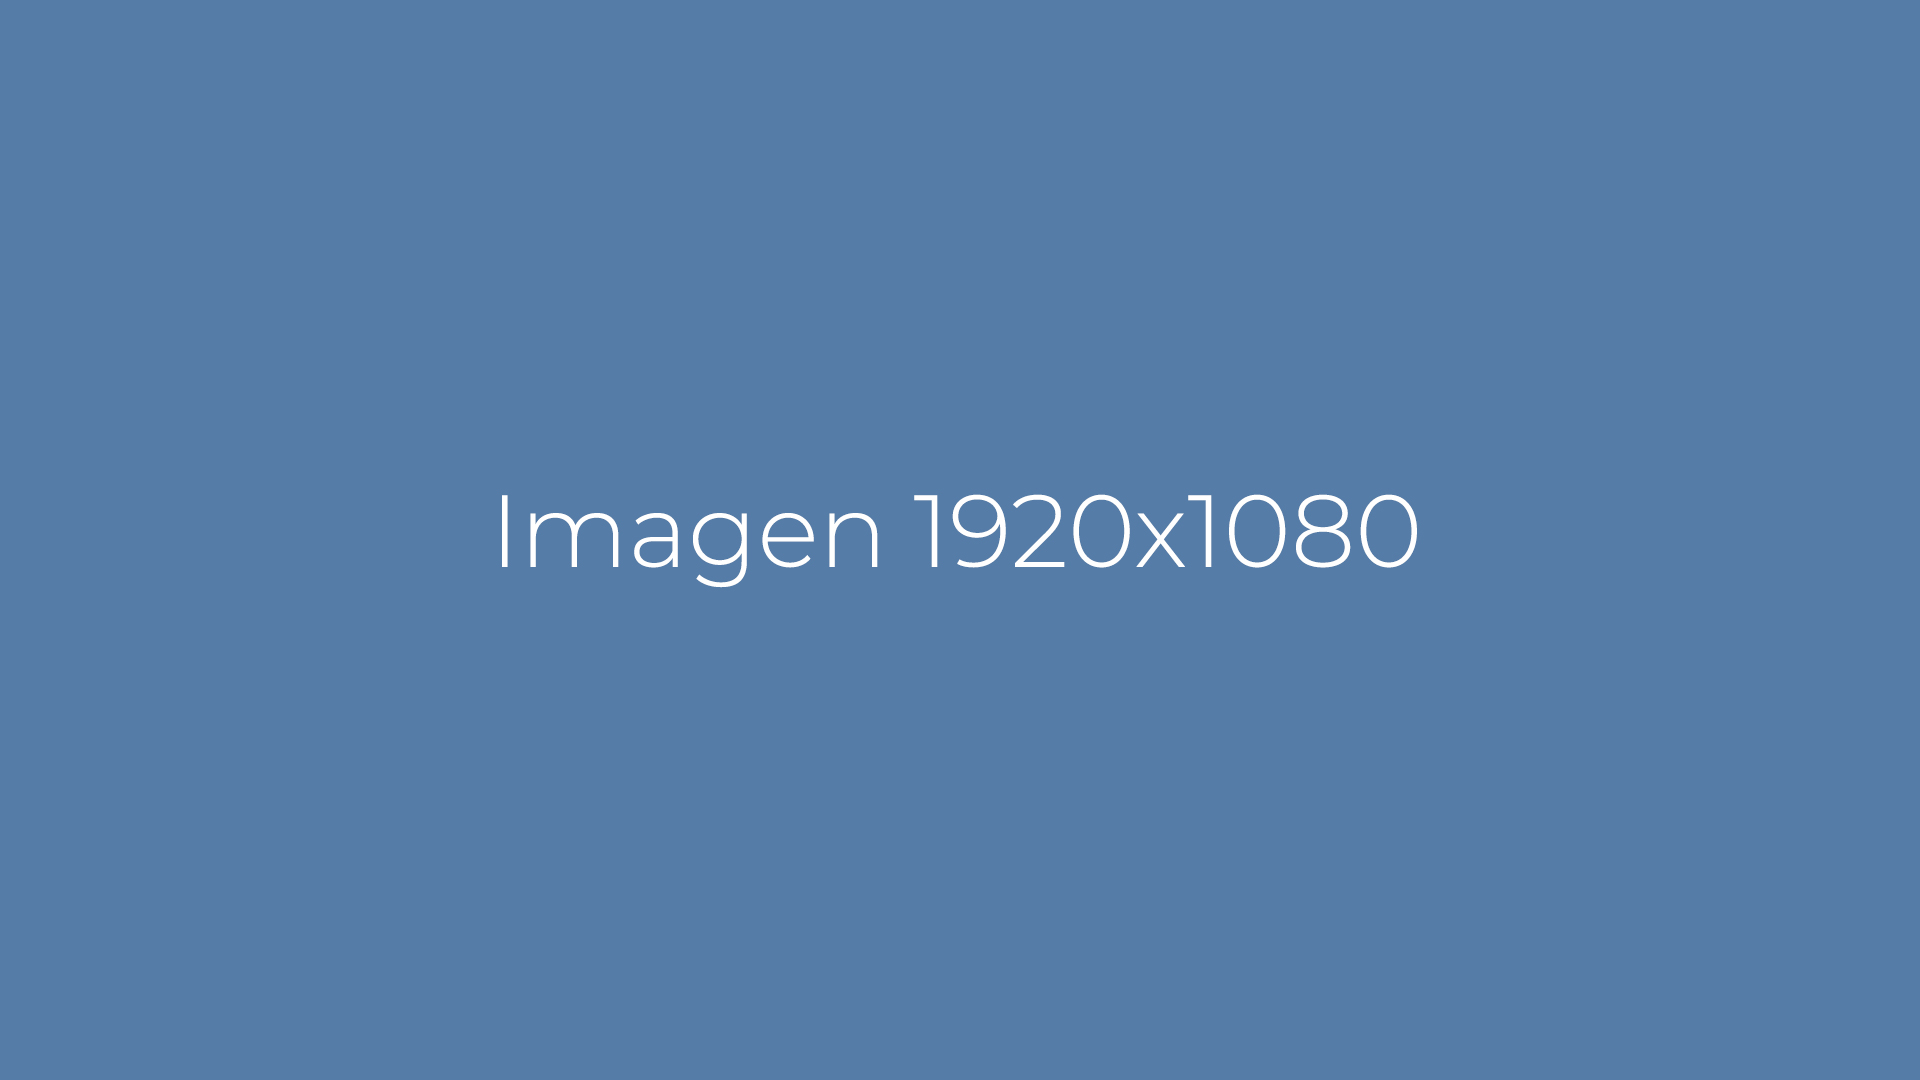 Imagen 1920x1080 2